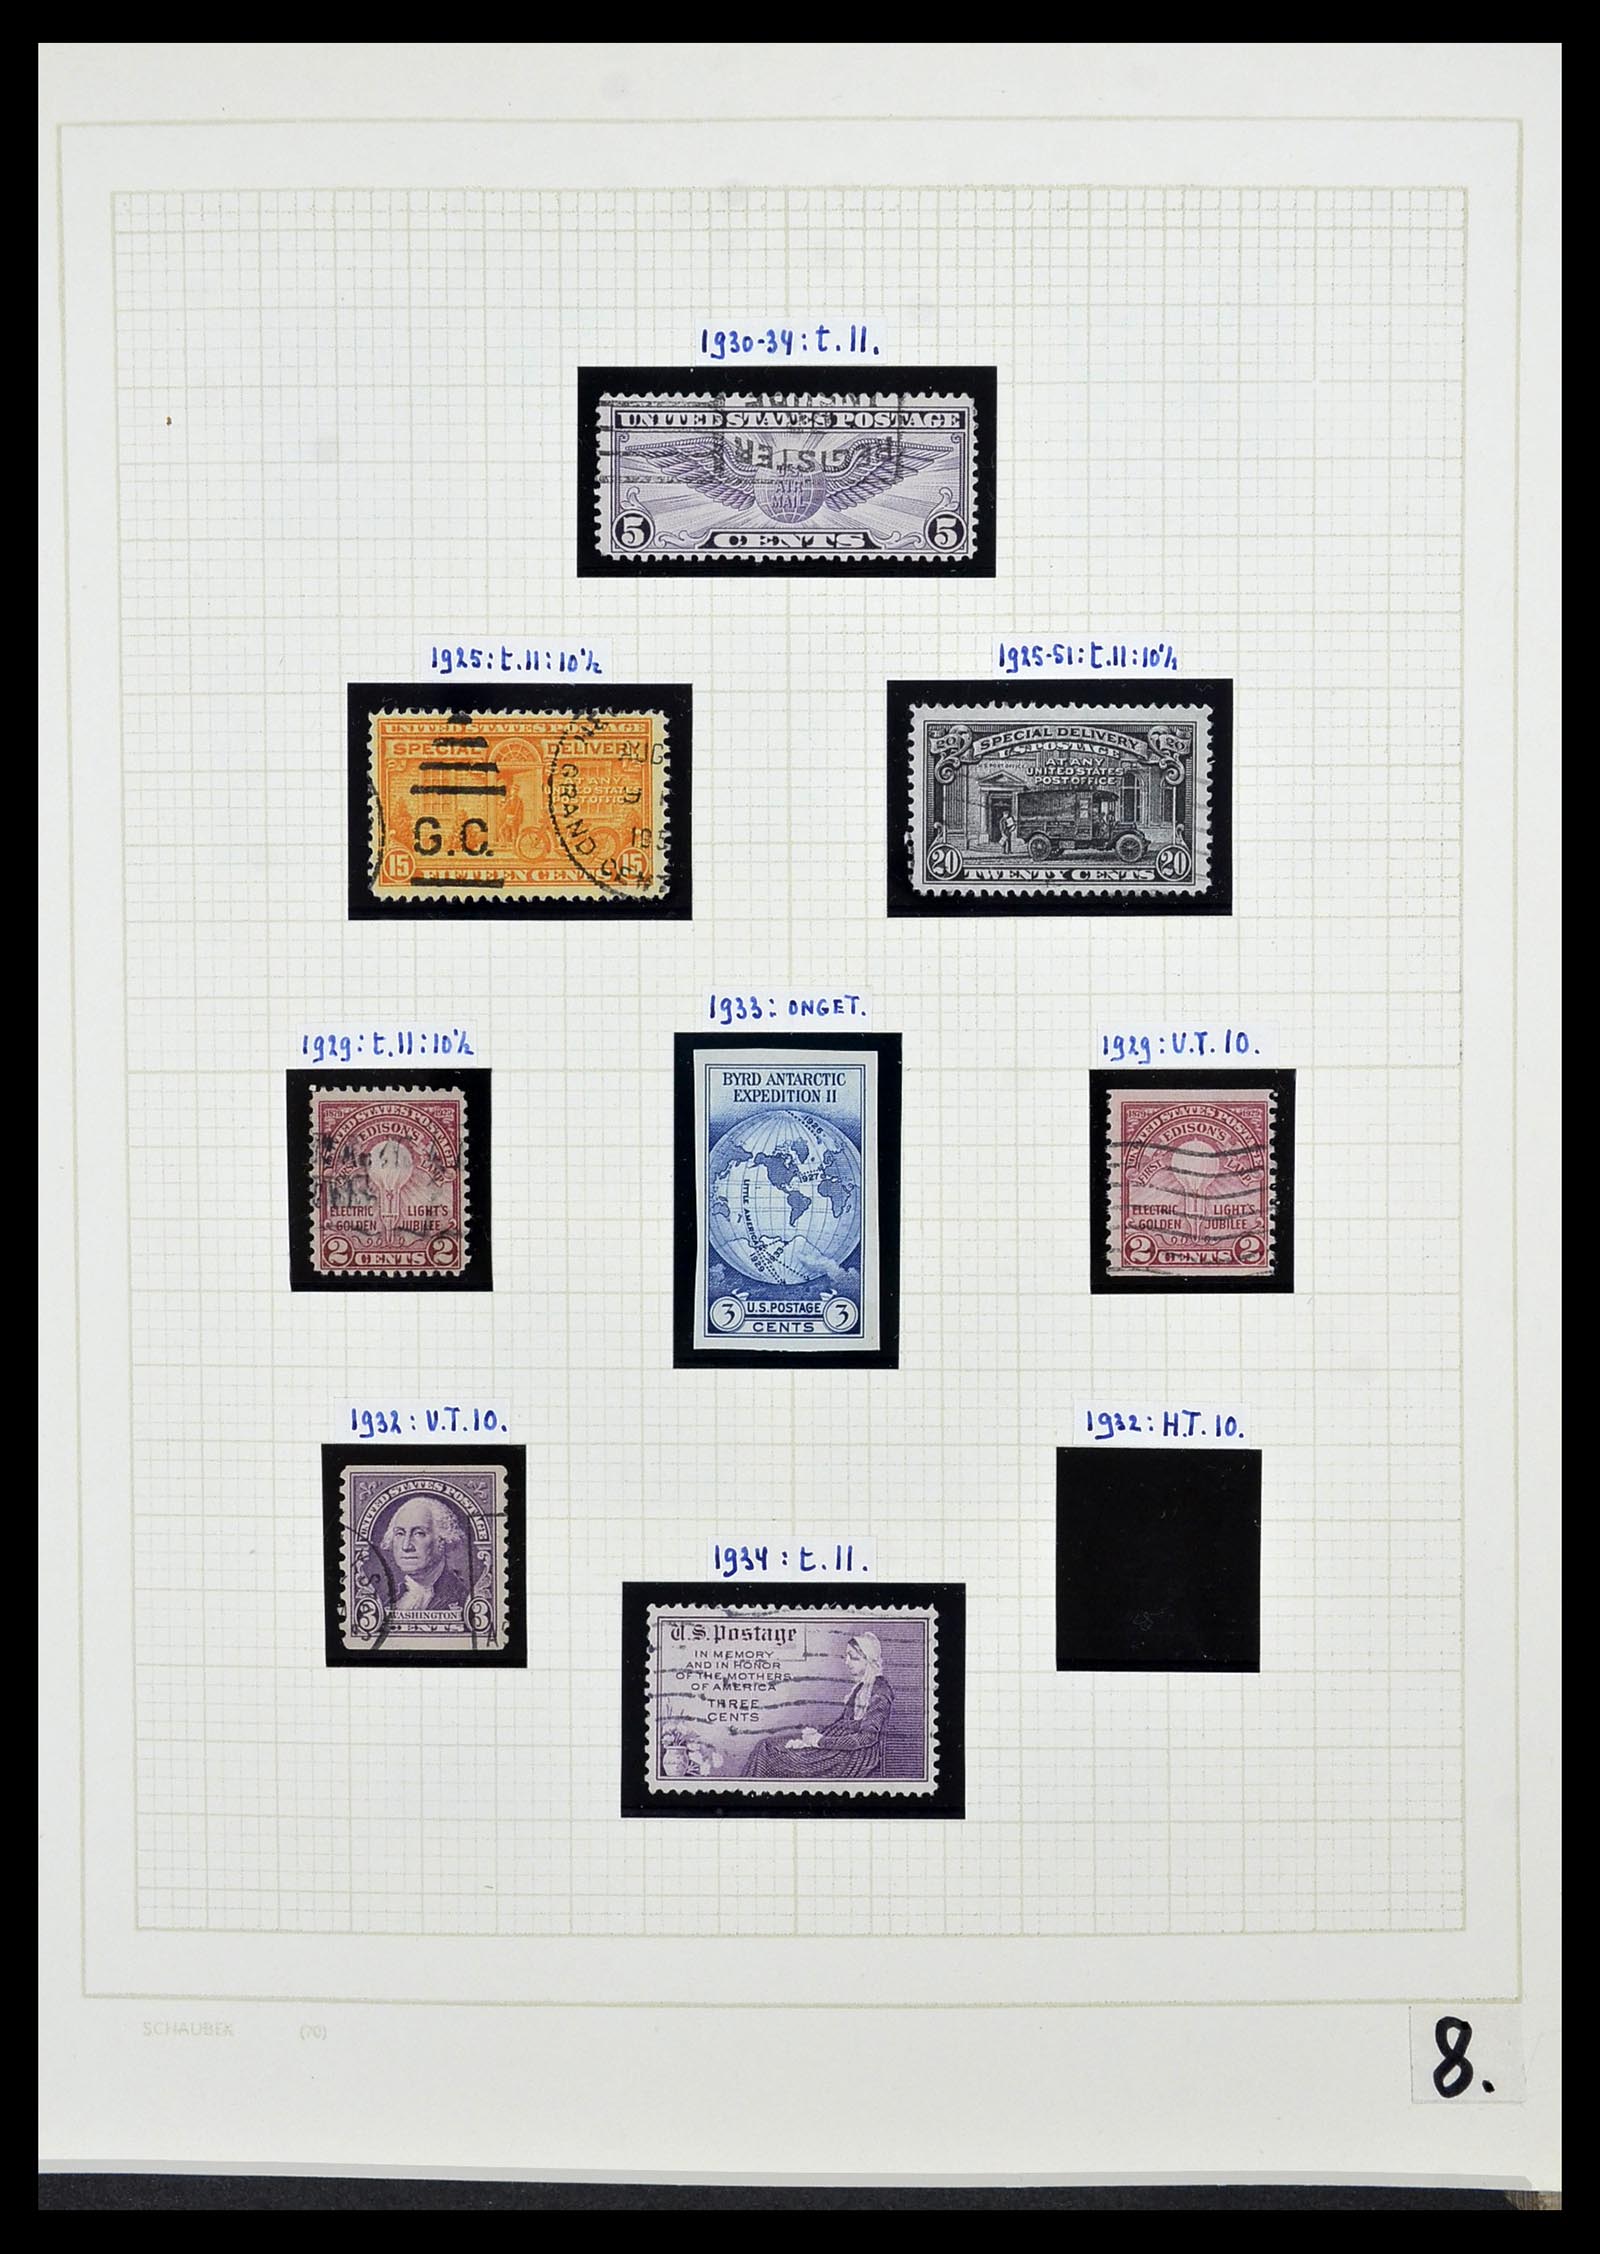 34525 029 - Stamp Collection 34525 USA 1851-1980.